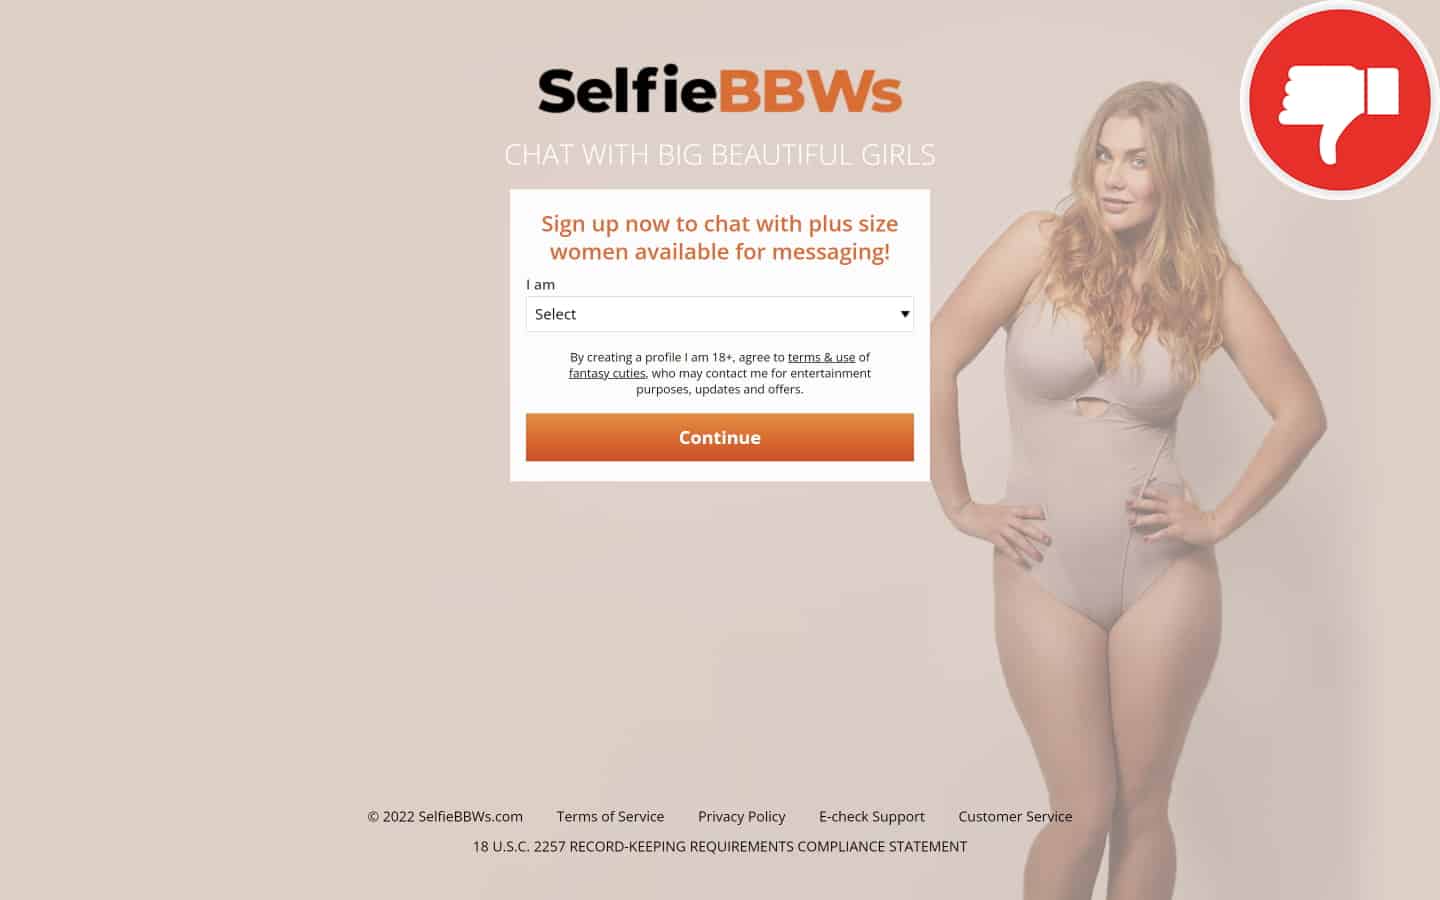 Review SelfieBBWs.com scam experience